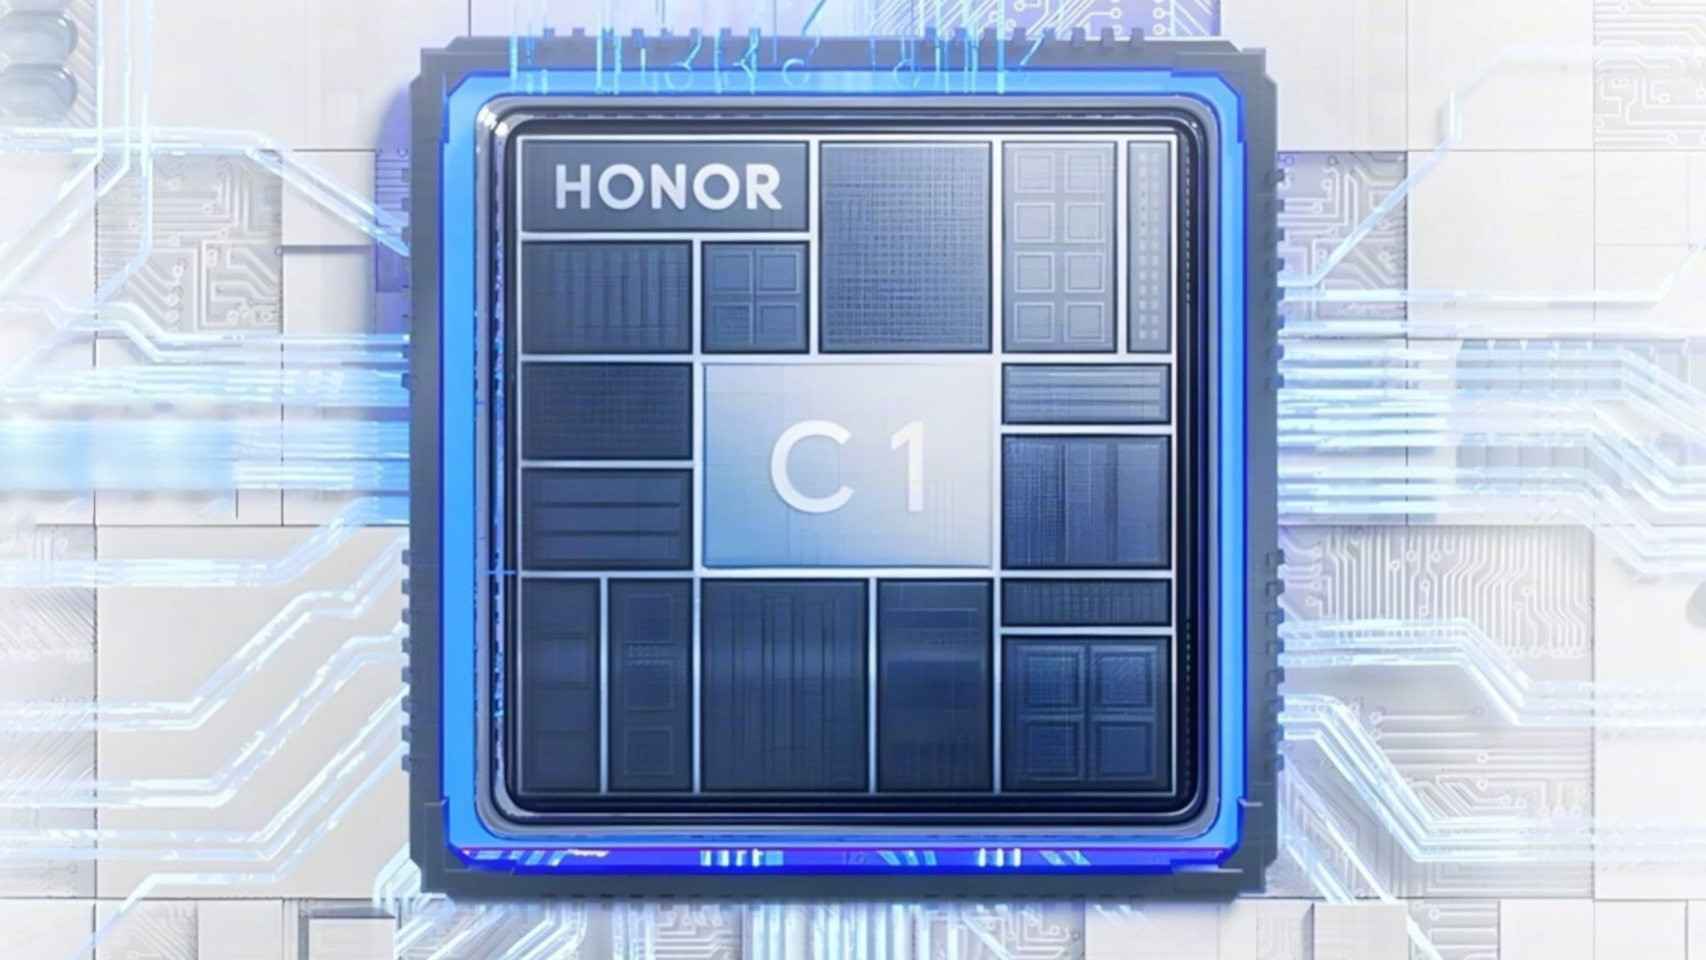 El chip Honor C1